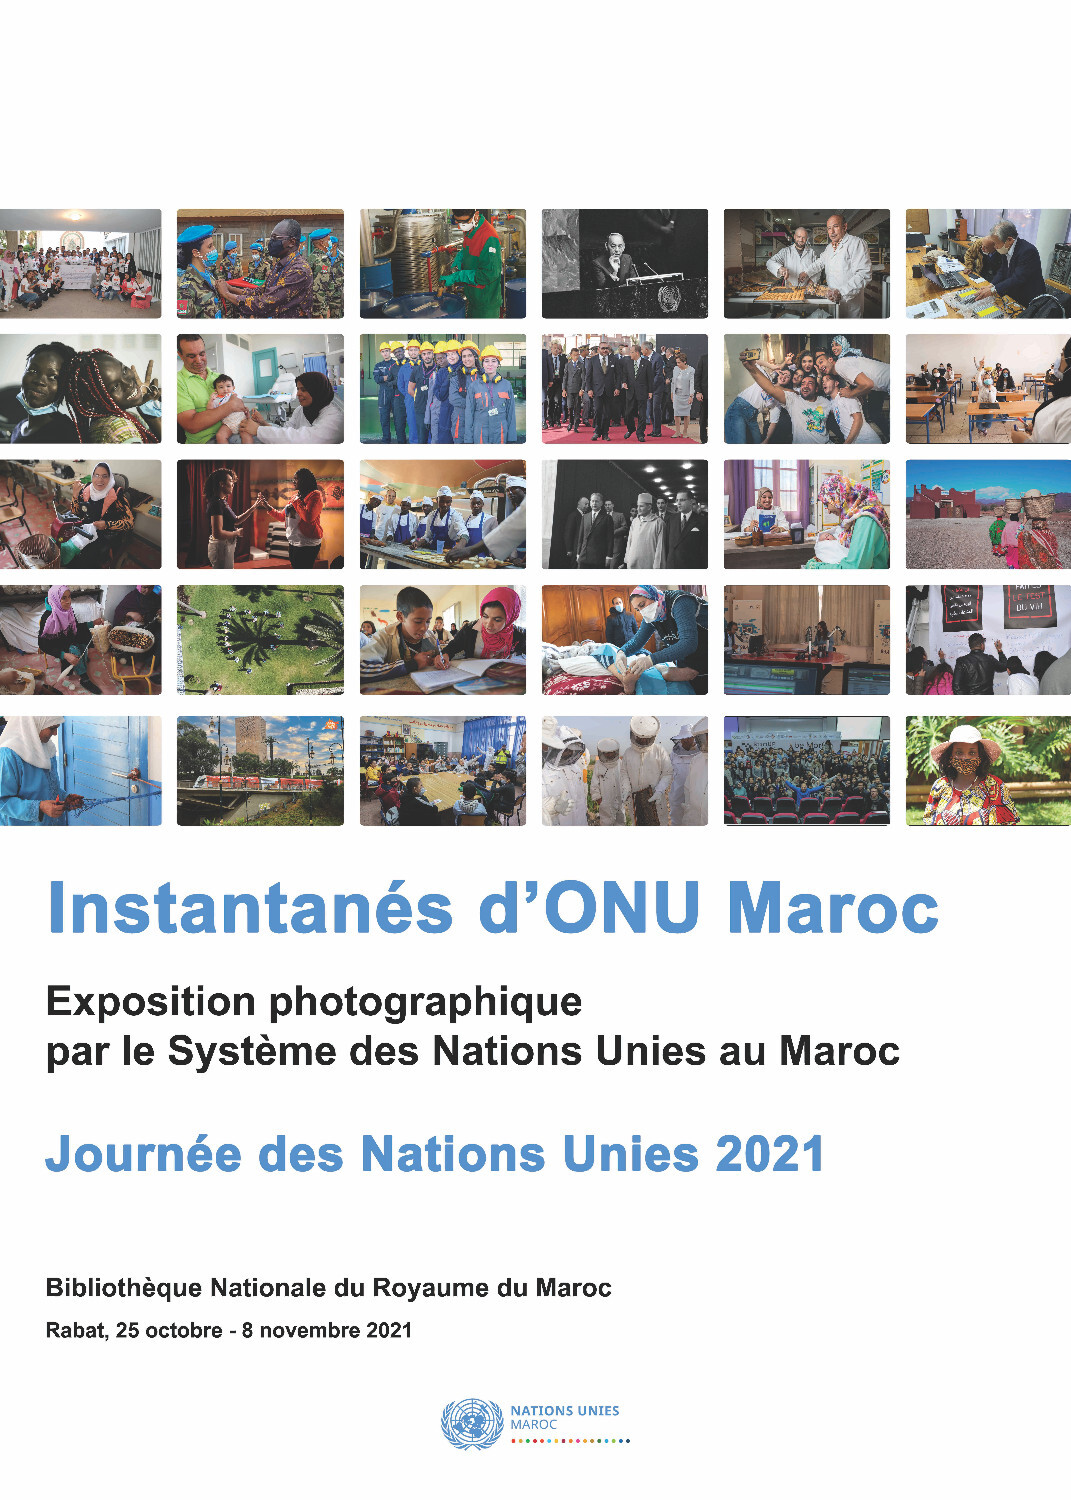 Journée des Nations Unies 2021: Exposition photographique  « Instantanés d’ONU Maroc »